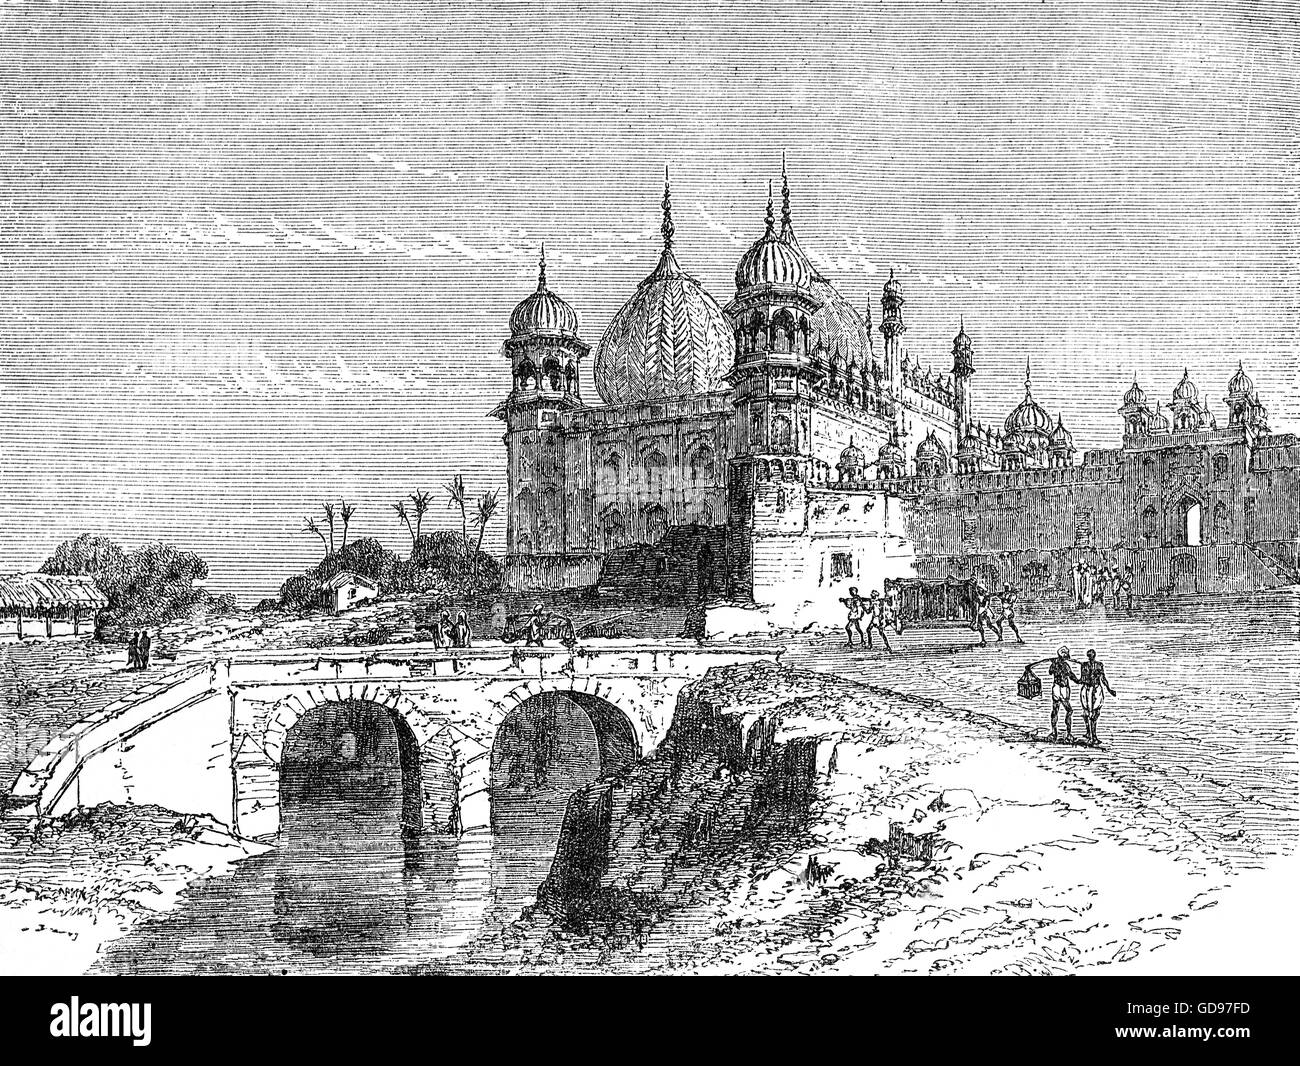 Une vue arrière de la 17e siècle Taj Mahal à Agra, une ville sur les rives de la rivière Yamuna dans l'état de l'Uttar Pradesh, Inde. Banque D'Images